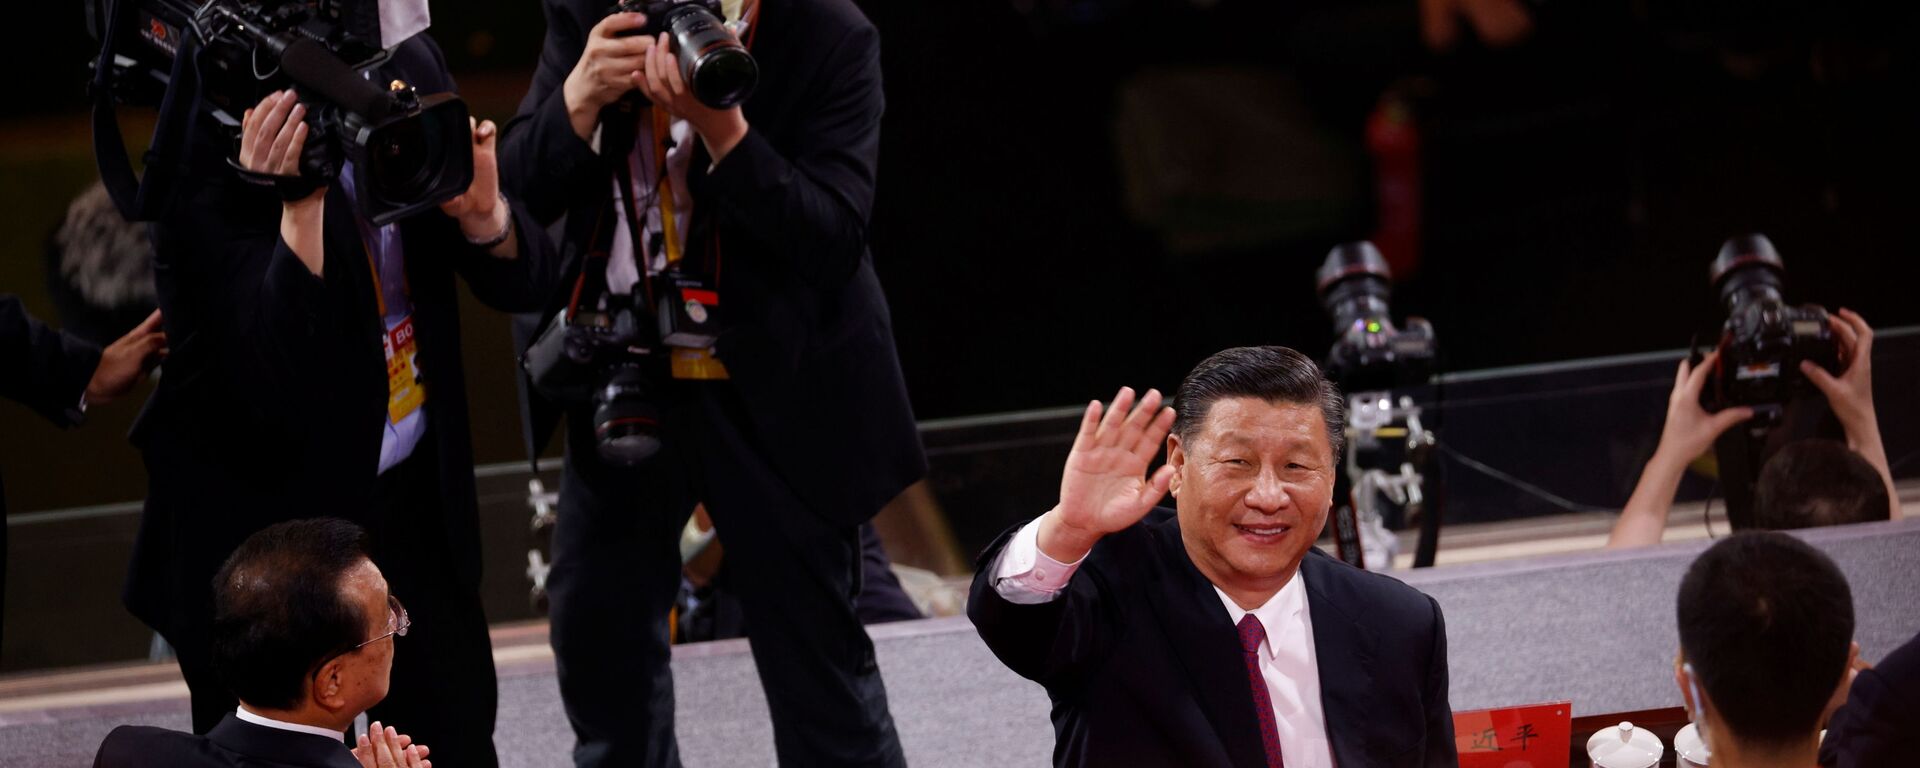 الرئيس الصيني شي جين بينغ يحي الجمهور بعد انتهاء حفل بمناسبة الذكرى المئوية لتأسيس الحزب الشيوعي الصيني في بكين، الصين 28 يونيو 2021 - سبوتنيك عربي, 1920, 17.11.2021